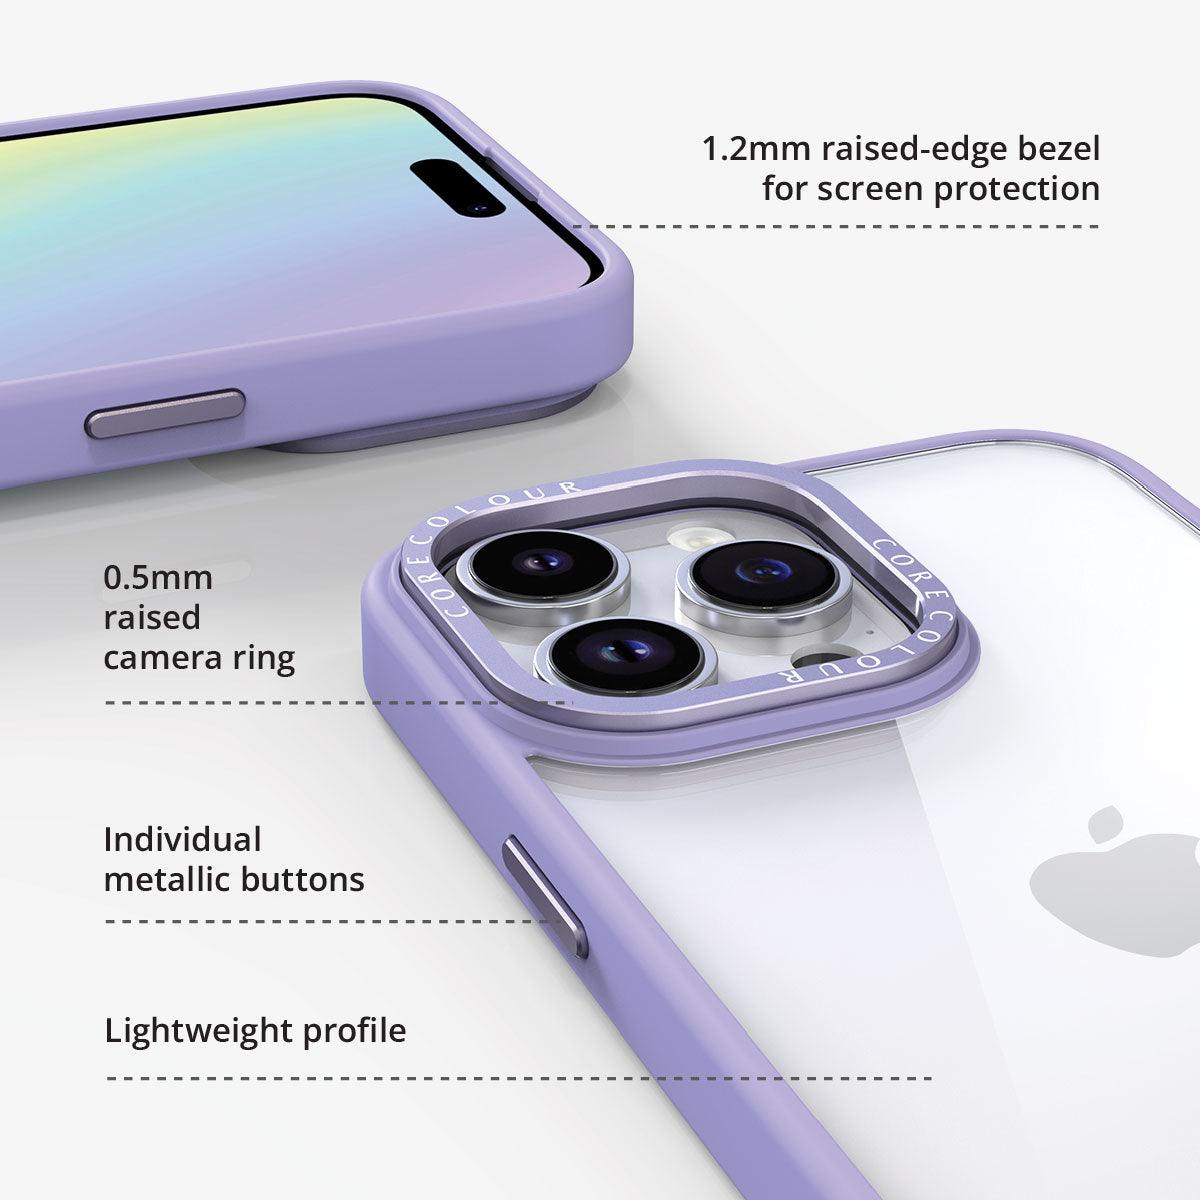 iPhone 7 Pink Lemonade Clear Phone Case - CORECOLOUR AU